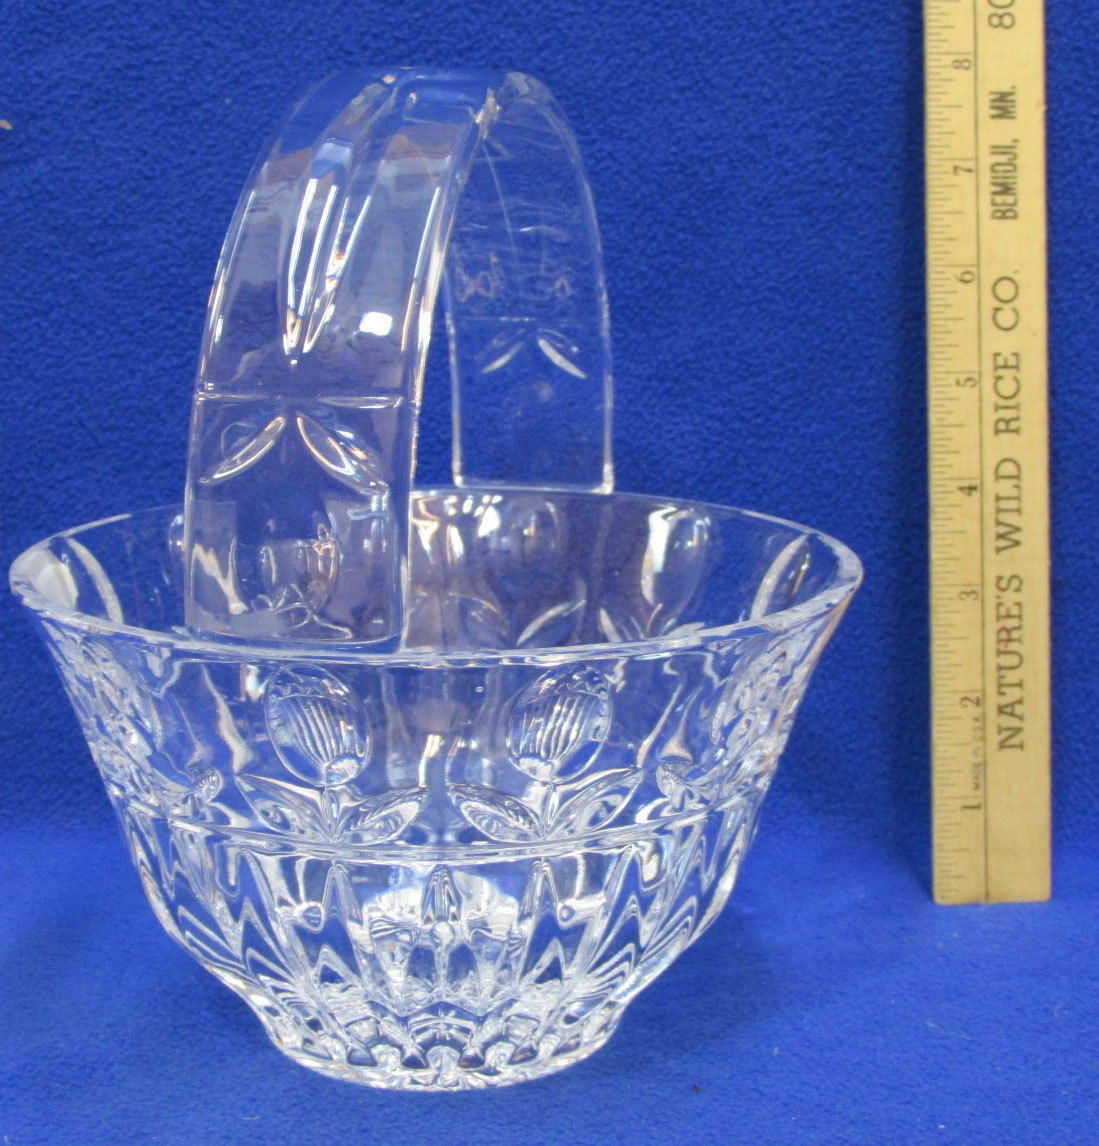 15 Unique Blue Cut Crystal Vase 2024 free download blue cut crystal vase of block crystal tulip garden handled basket y3916 ebay regarding s l1600